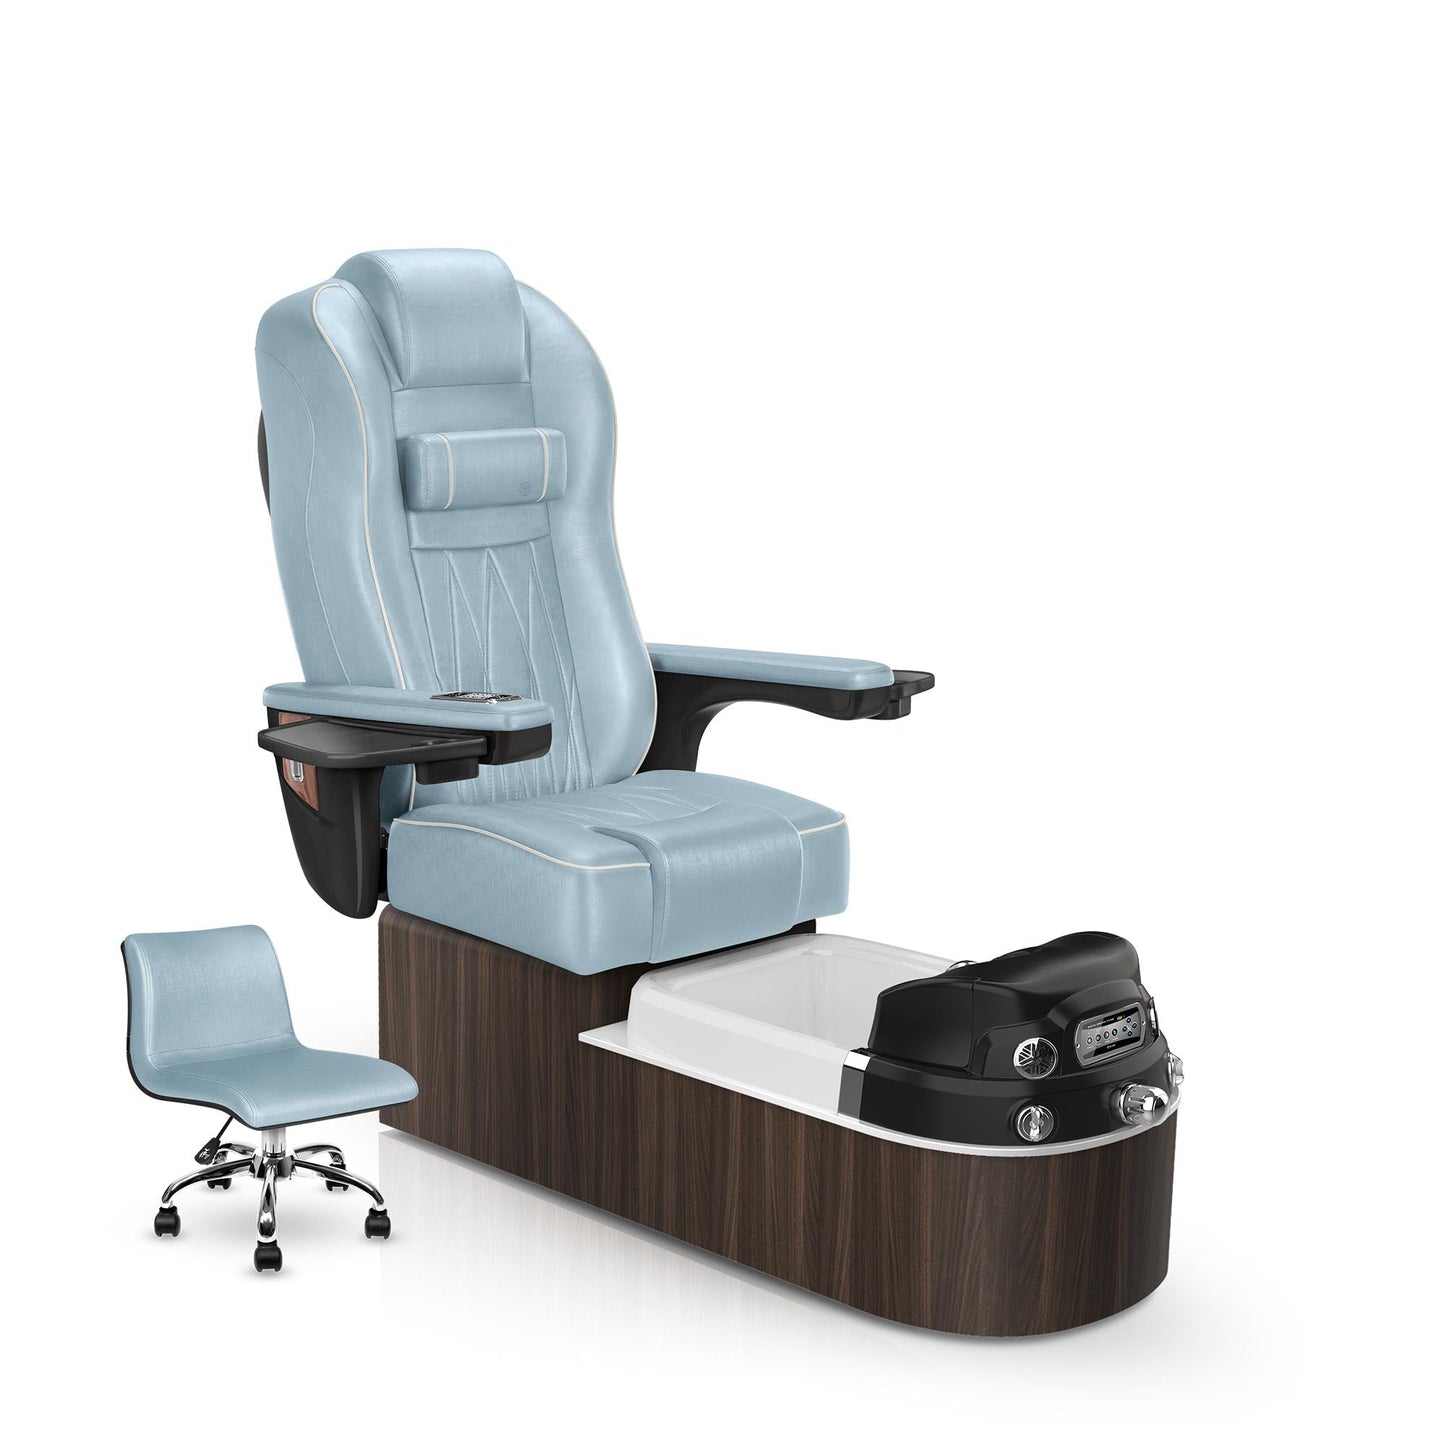 Lexor Envision pedicure chair glacier blue cushion and dark walnut base